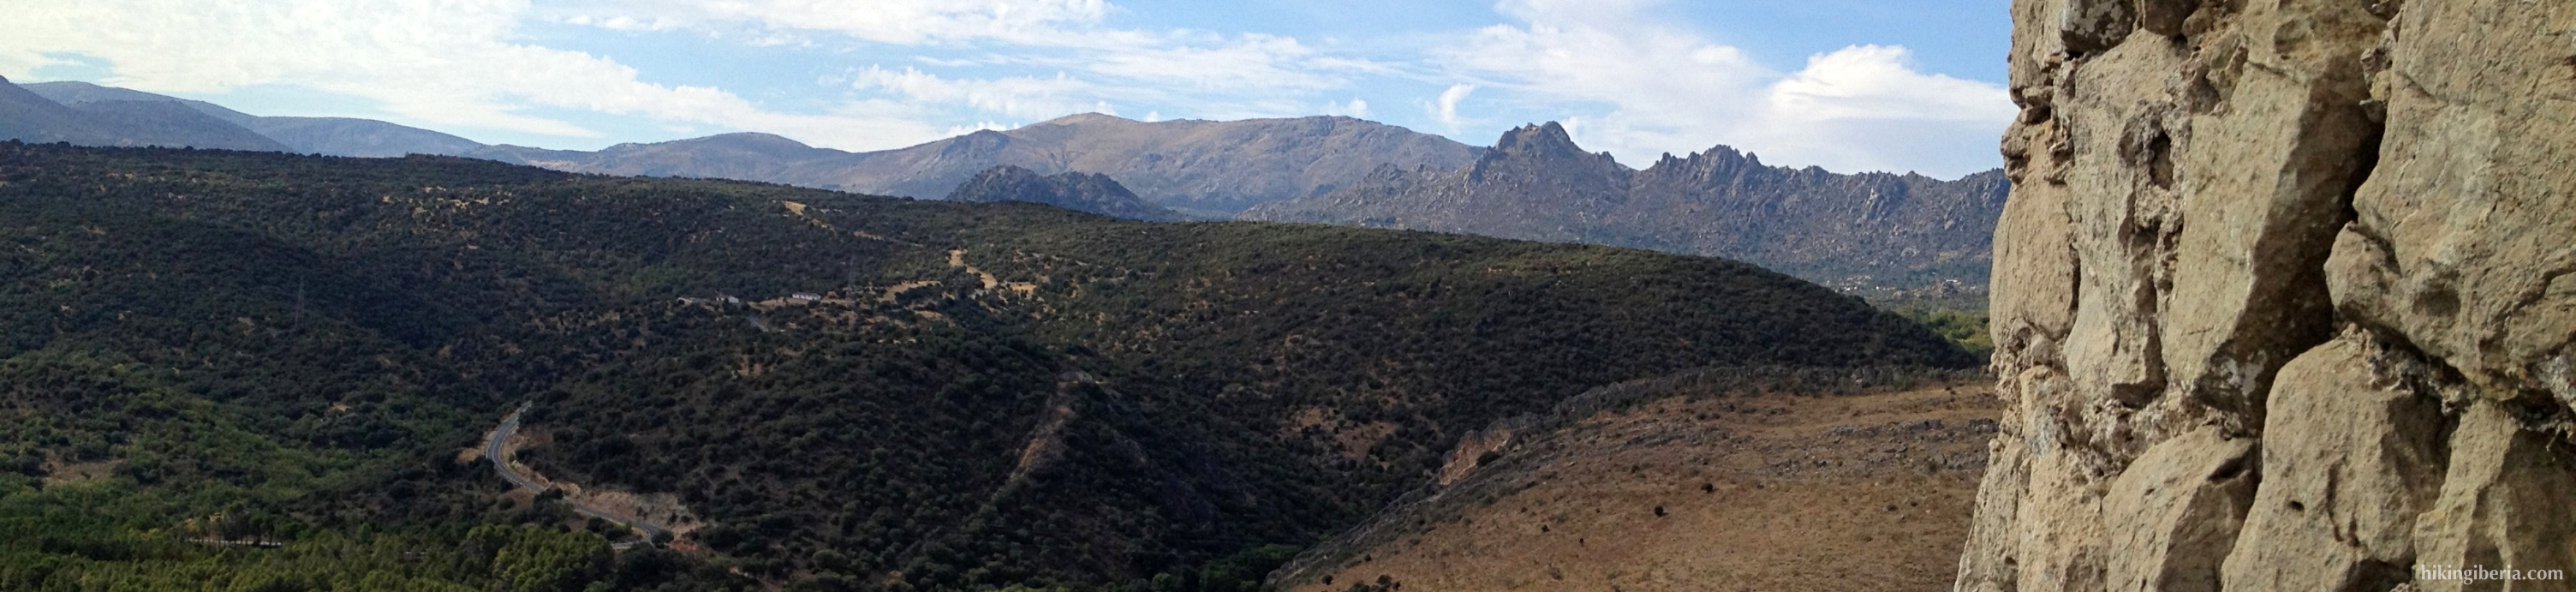 De Heuvels van Torrelaguna